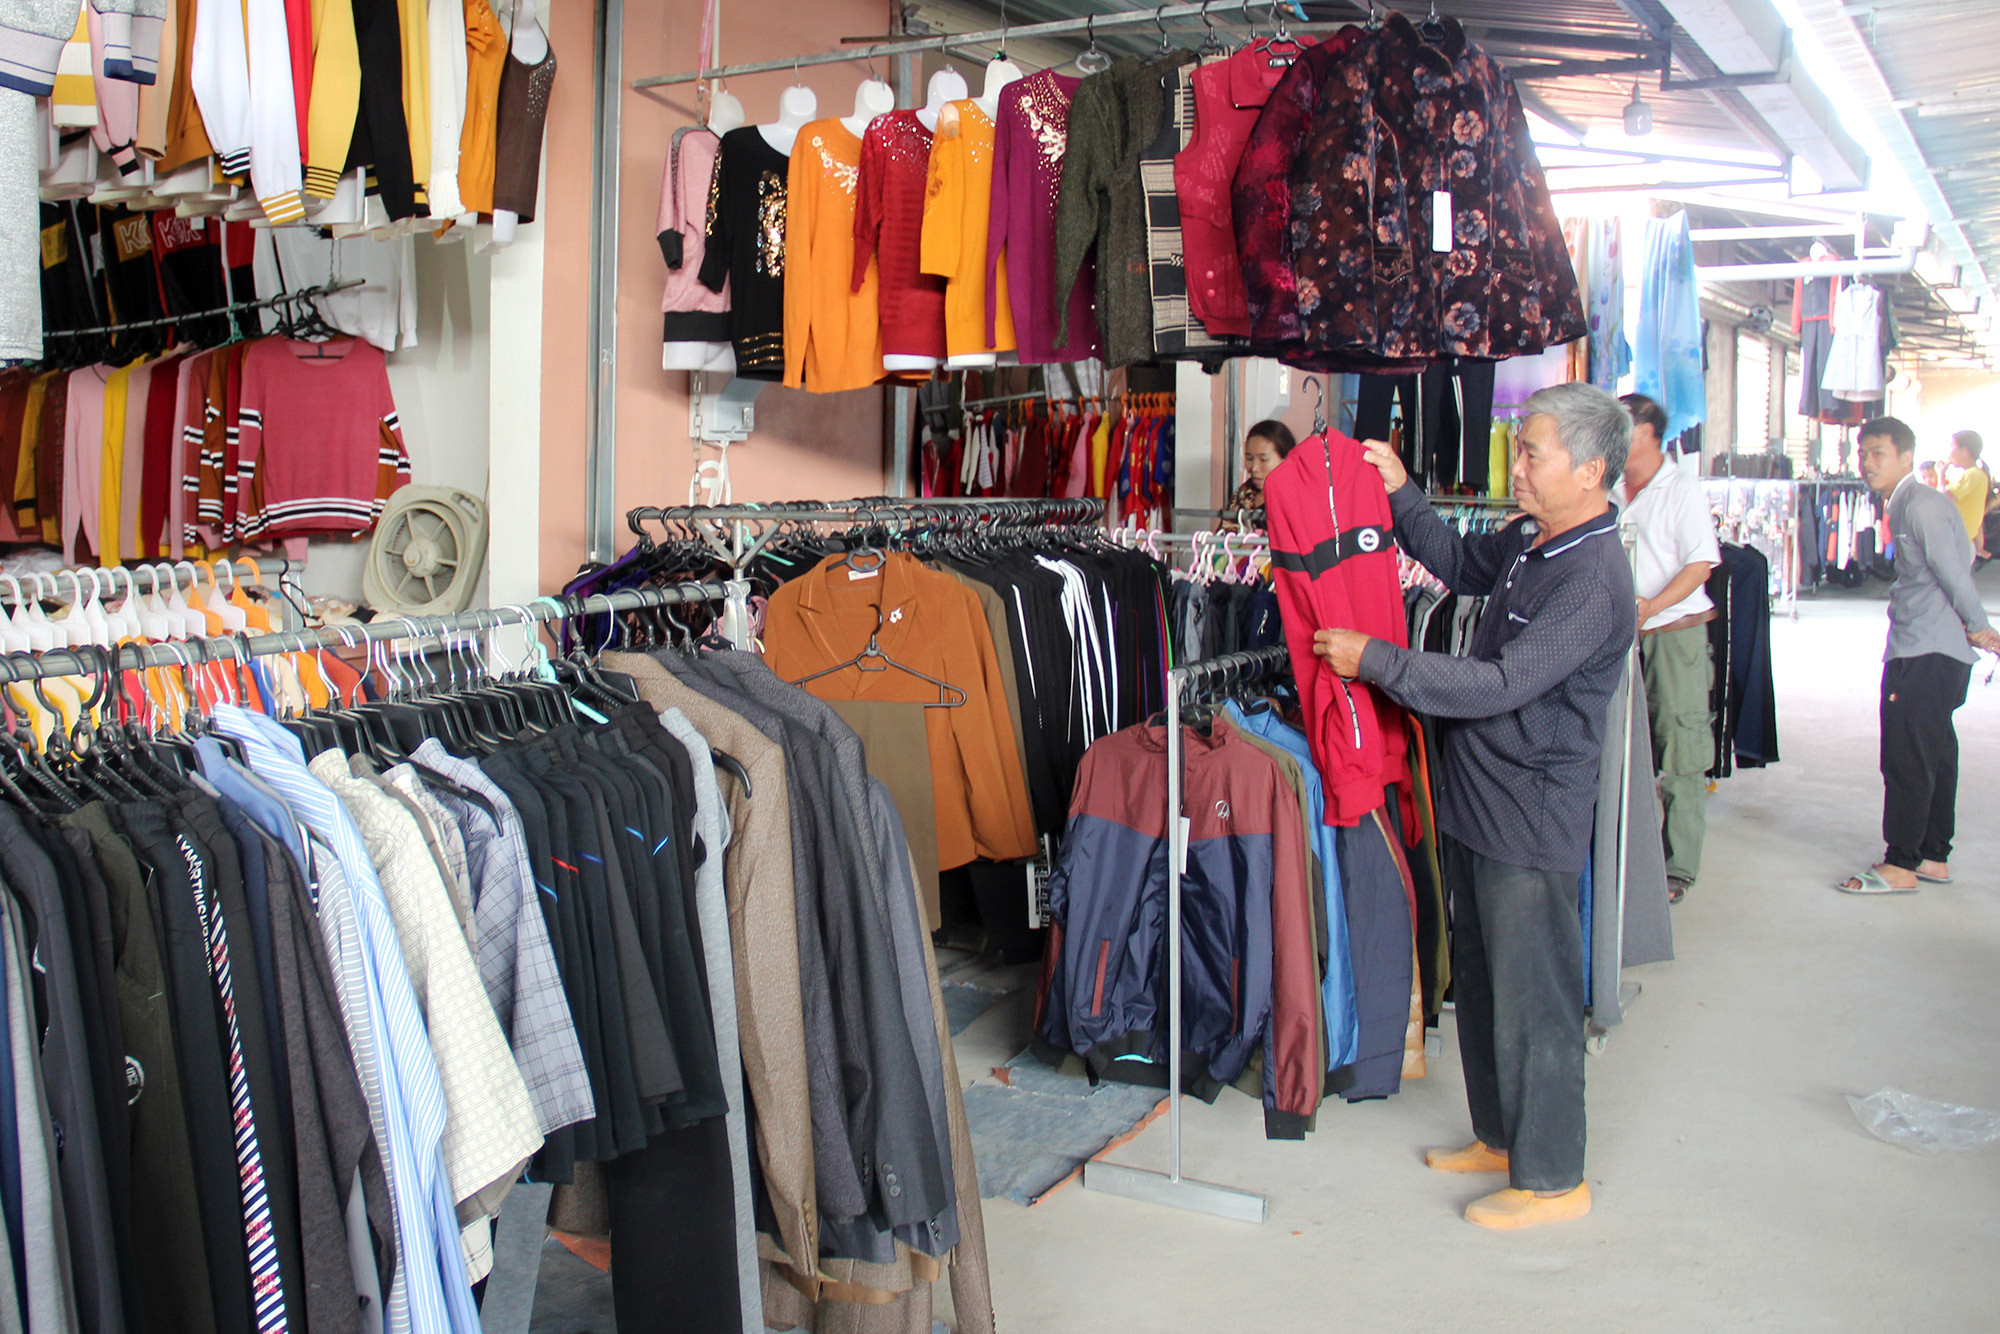 Khu vực bán quần áo tại chợ Diễn Ngọc. Ảnh: V.T